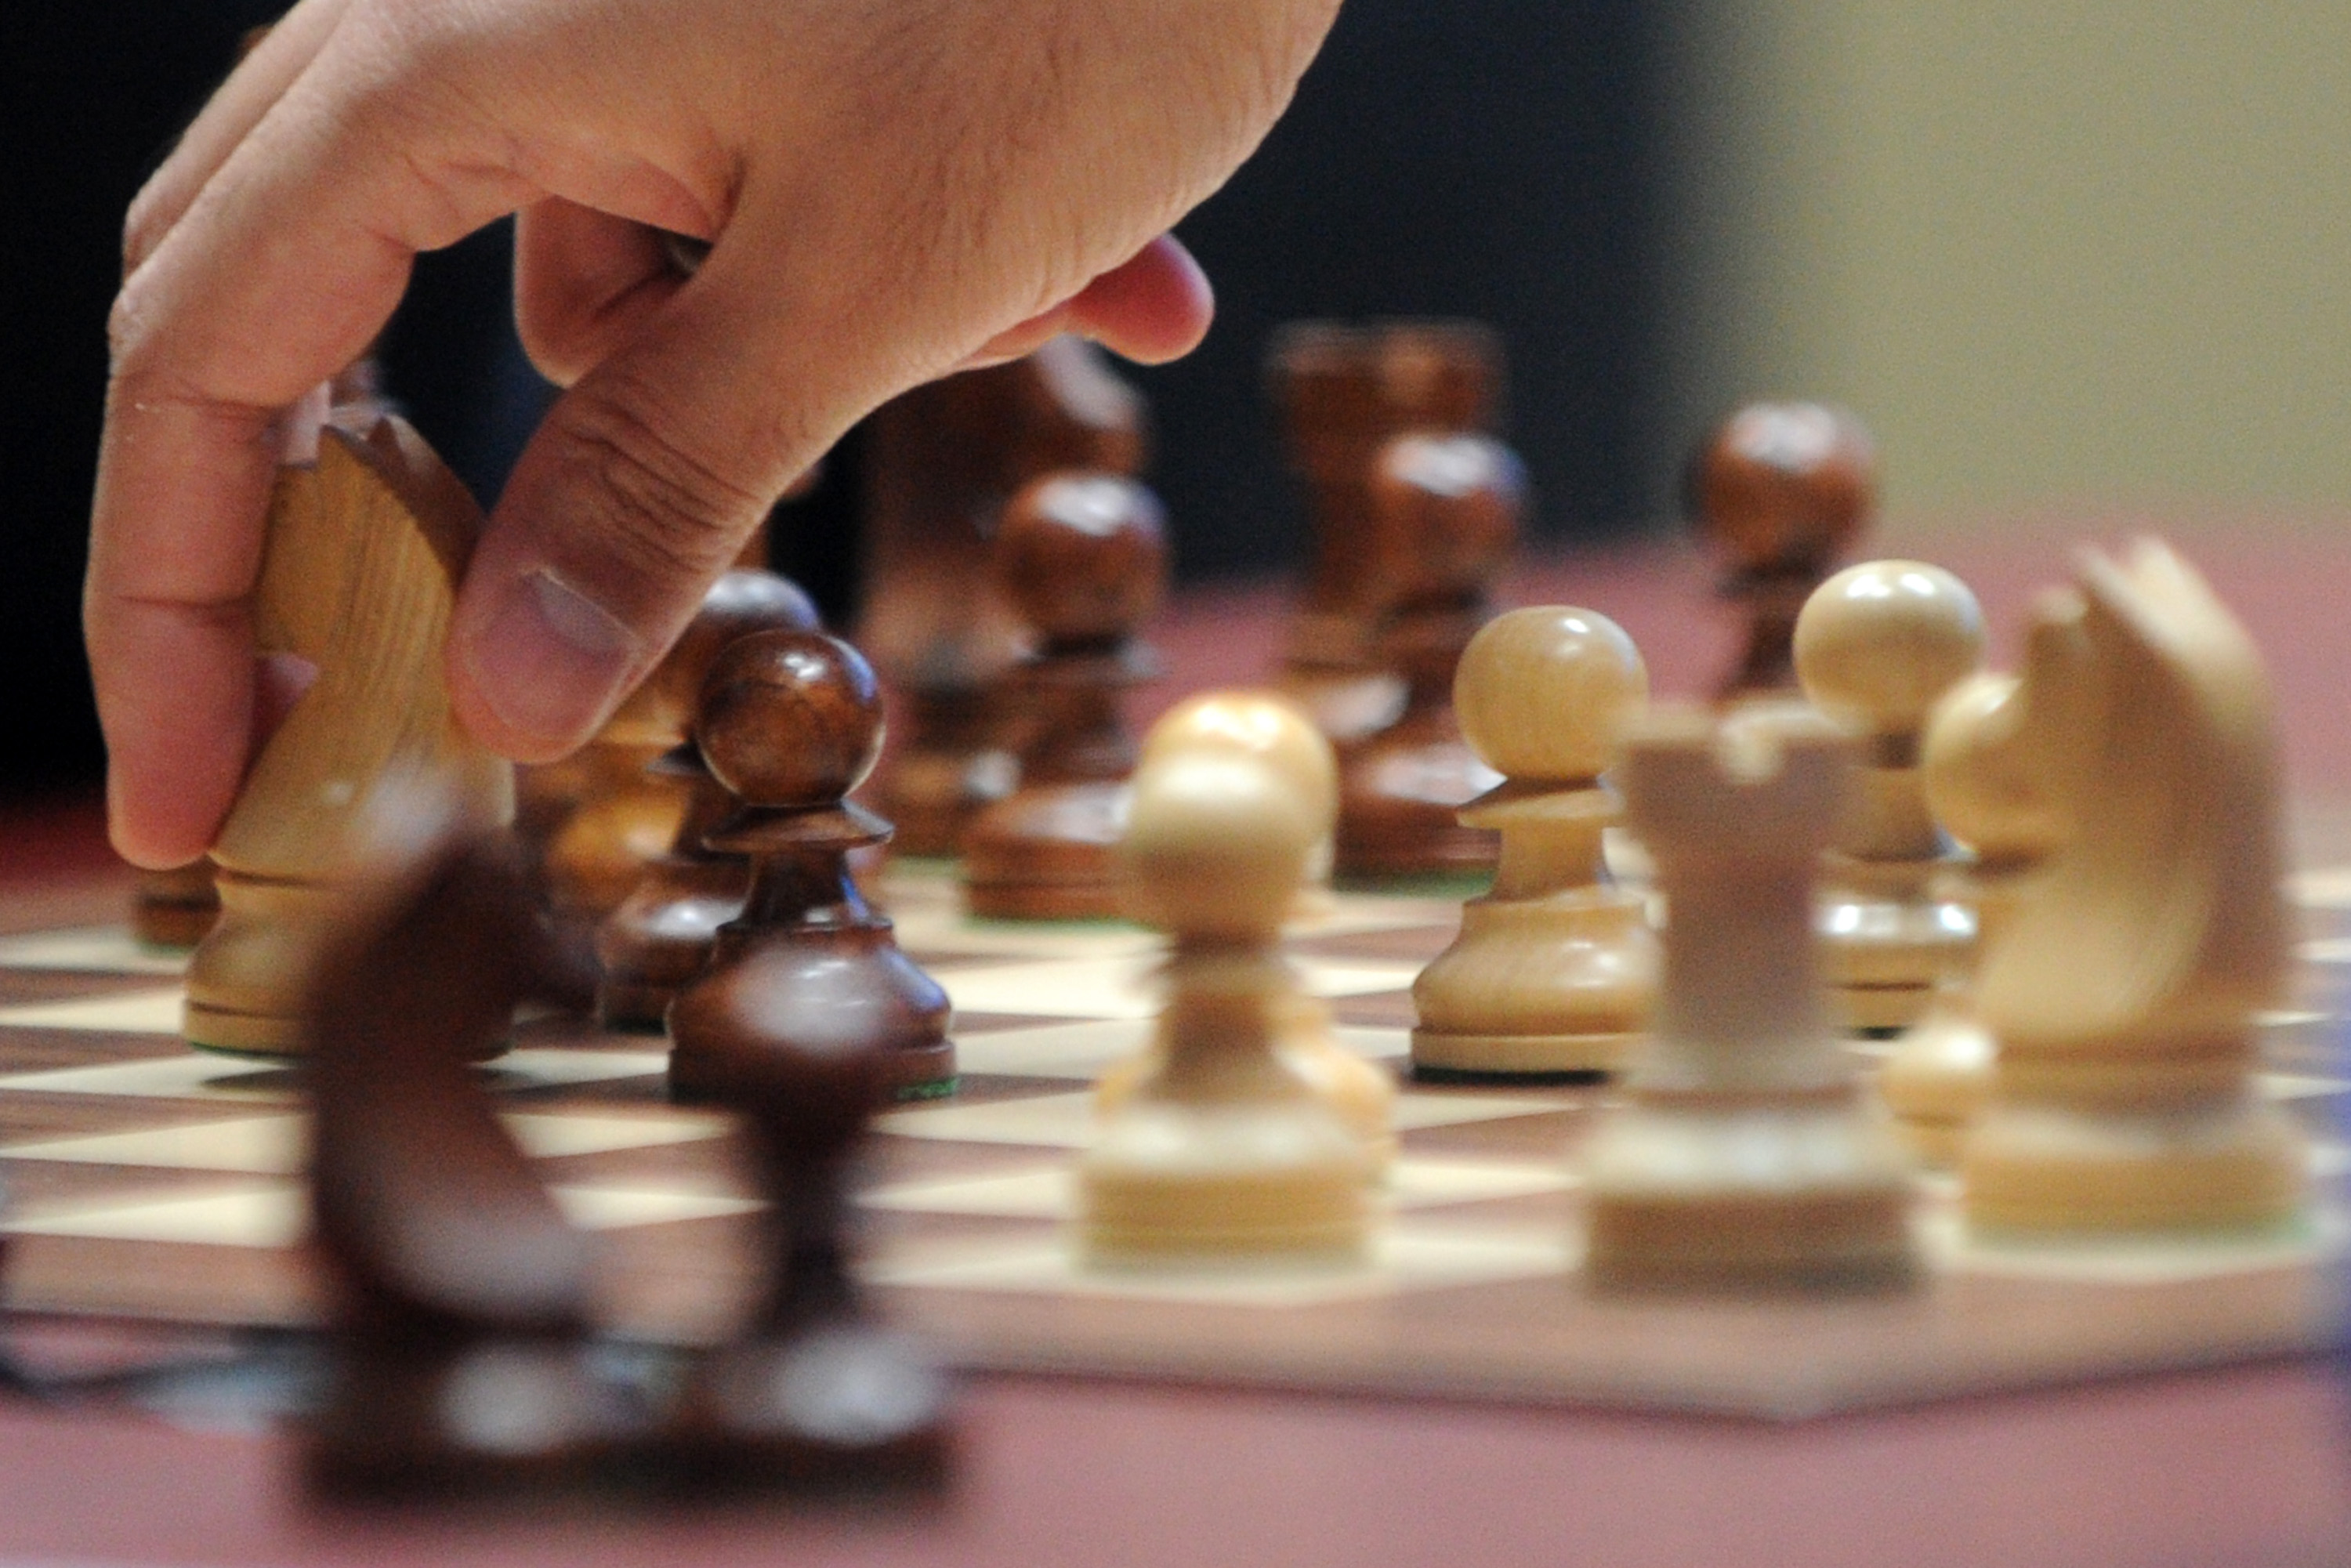 Игра в шахматы отлично развивает мозг. Фото: KIRILL KUDRYAVTSEV / AFP / GettyImages